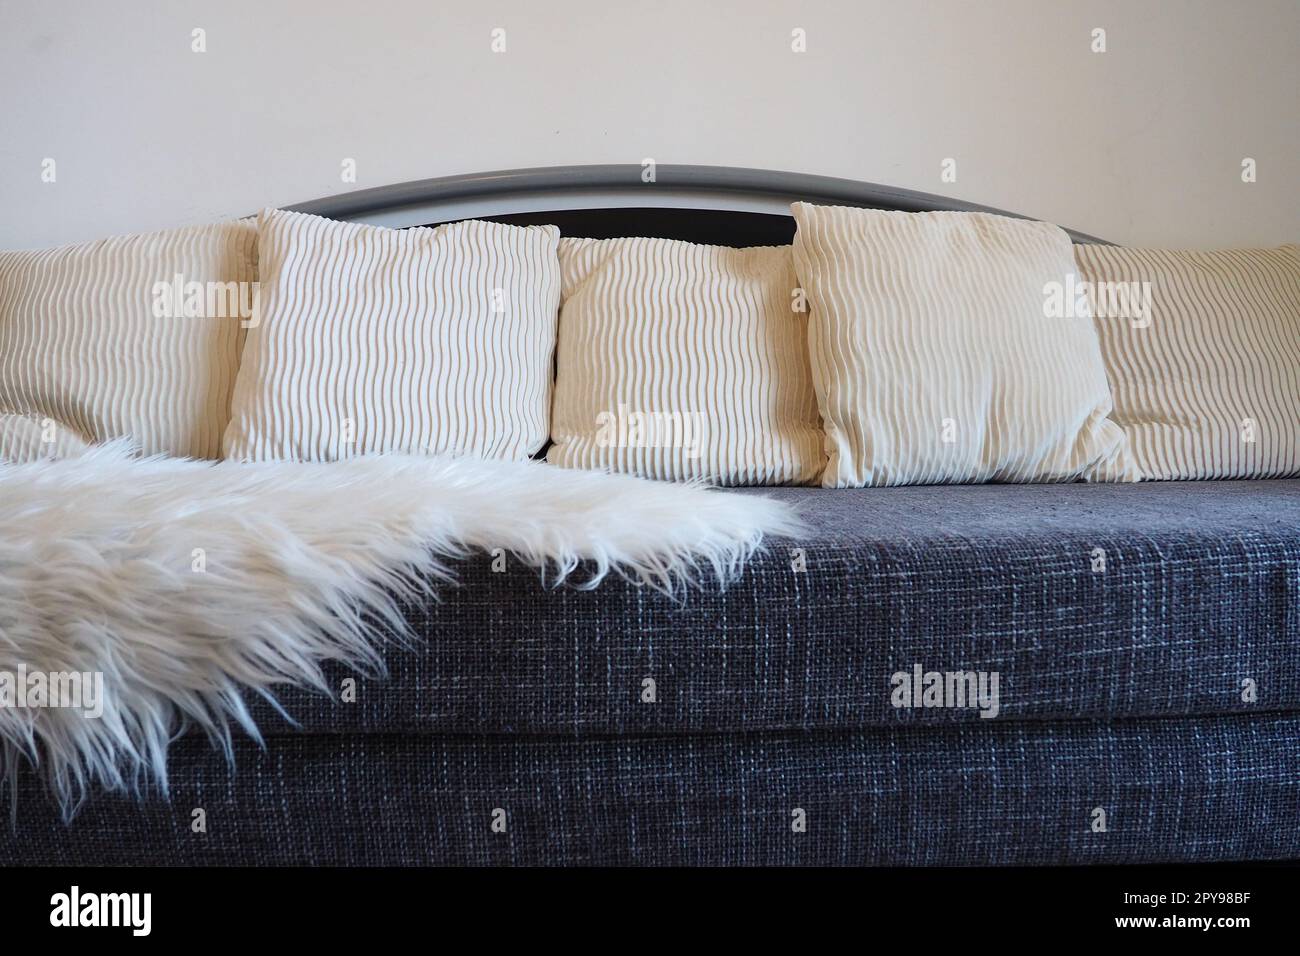 Graues Sofa mit grobem Polstertuch und weißen dekorativen, gewellten Kissen. Über den Sitz wird ein weißer Kunstpelzteppich oder ein Überwurf geschleudert. Wohnzimmereinrichtung Stockfoto